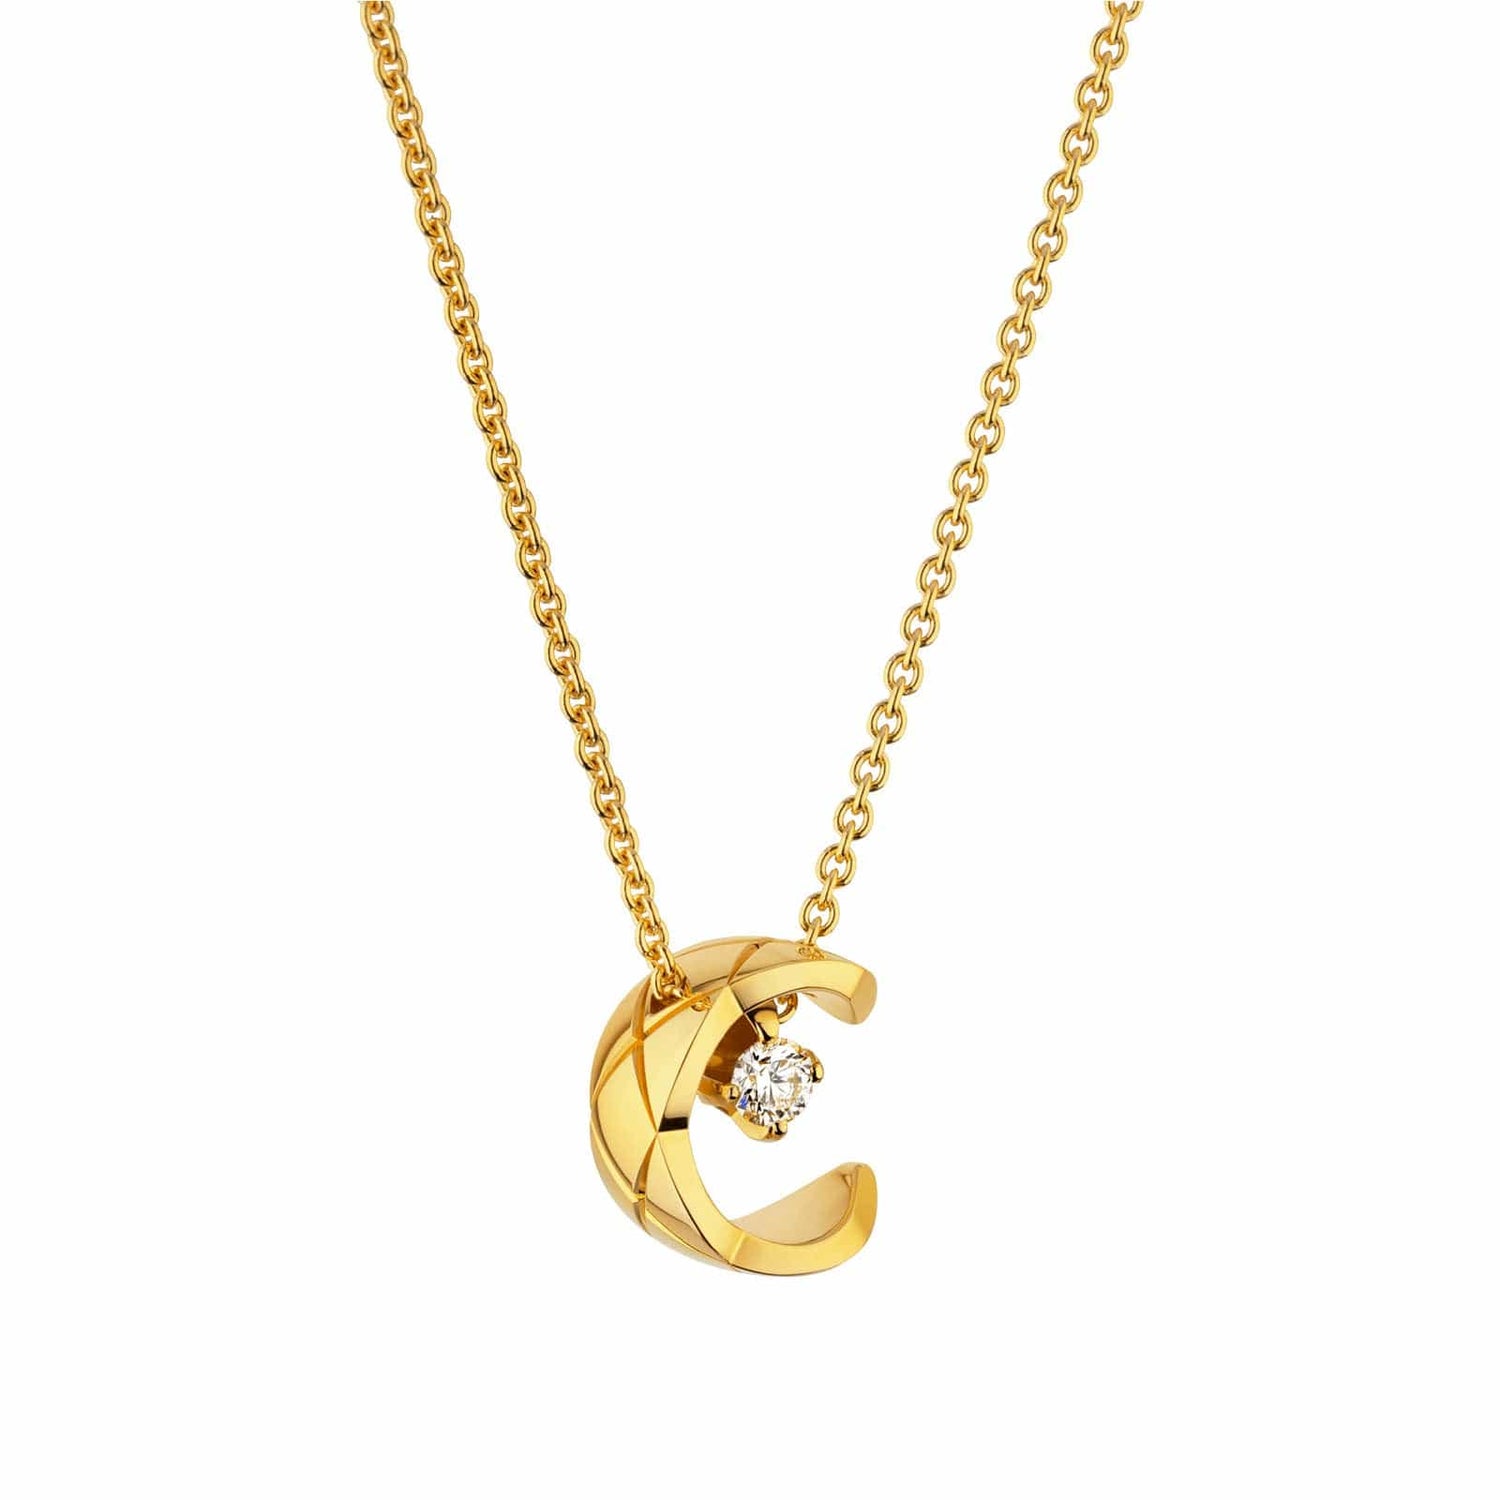 Chanel Jewelry – Les Pierres de Julie